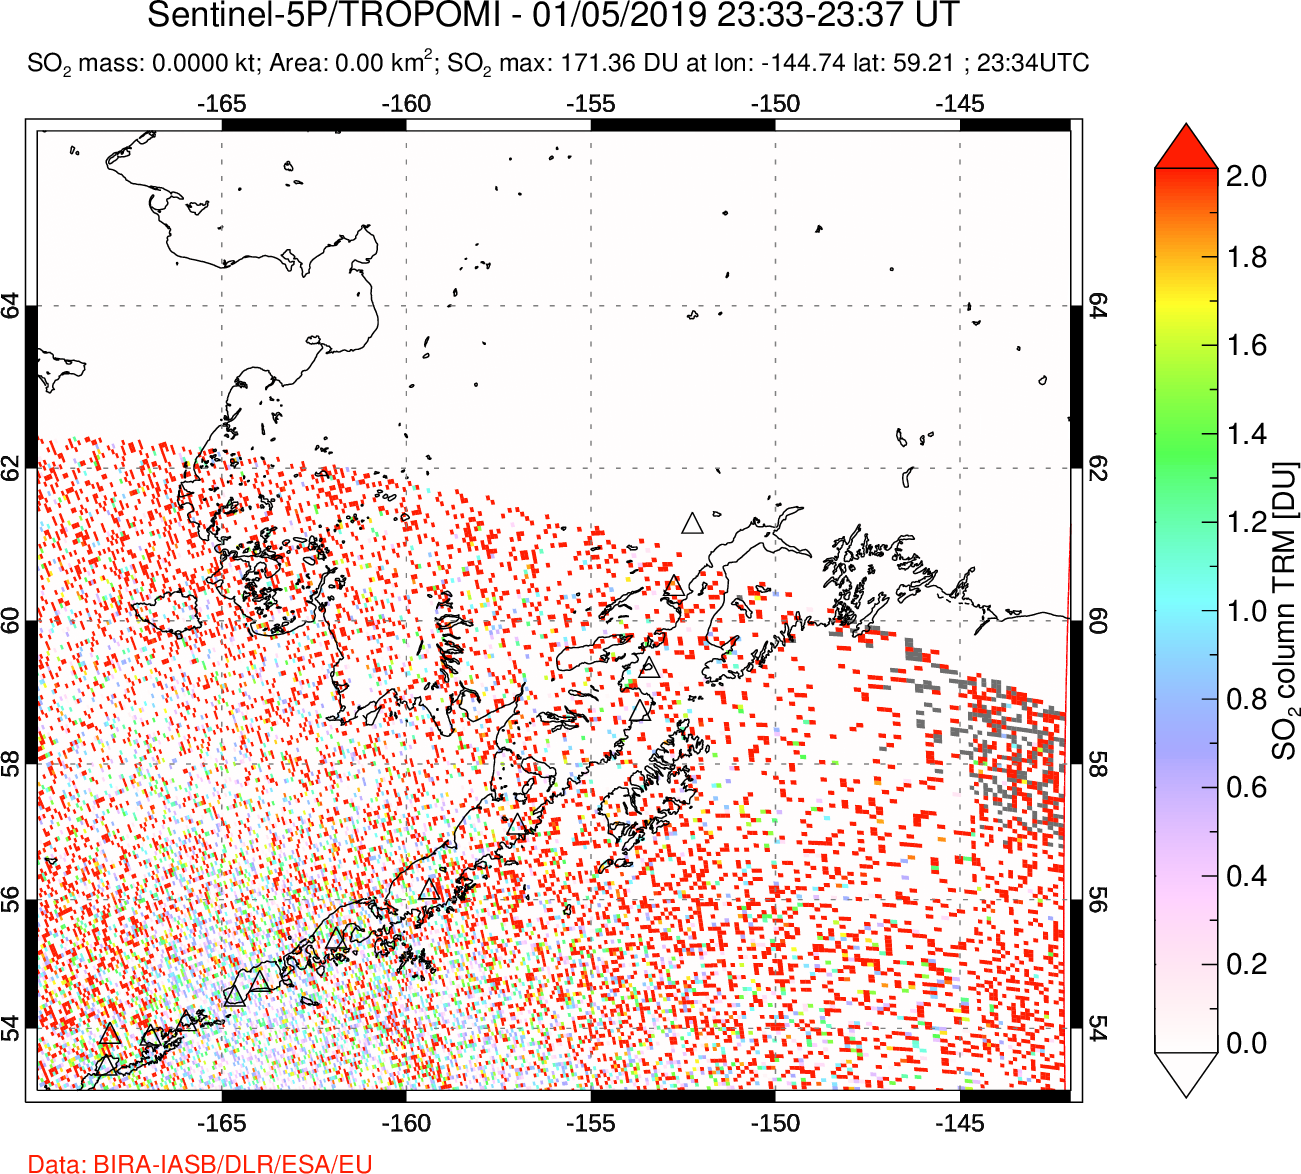 A sulfur dioxide image over Alaska, USA on Jan 05, 2019.